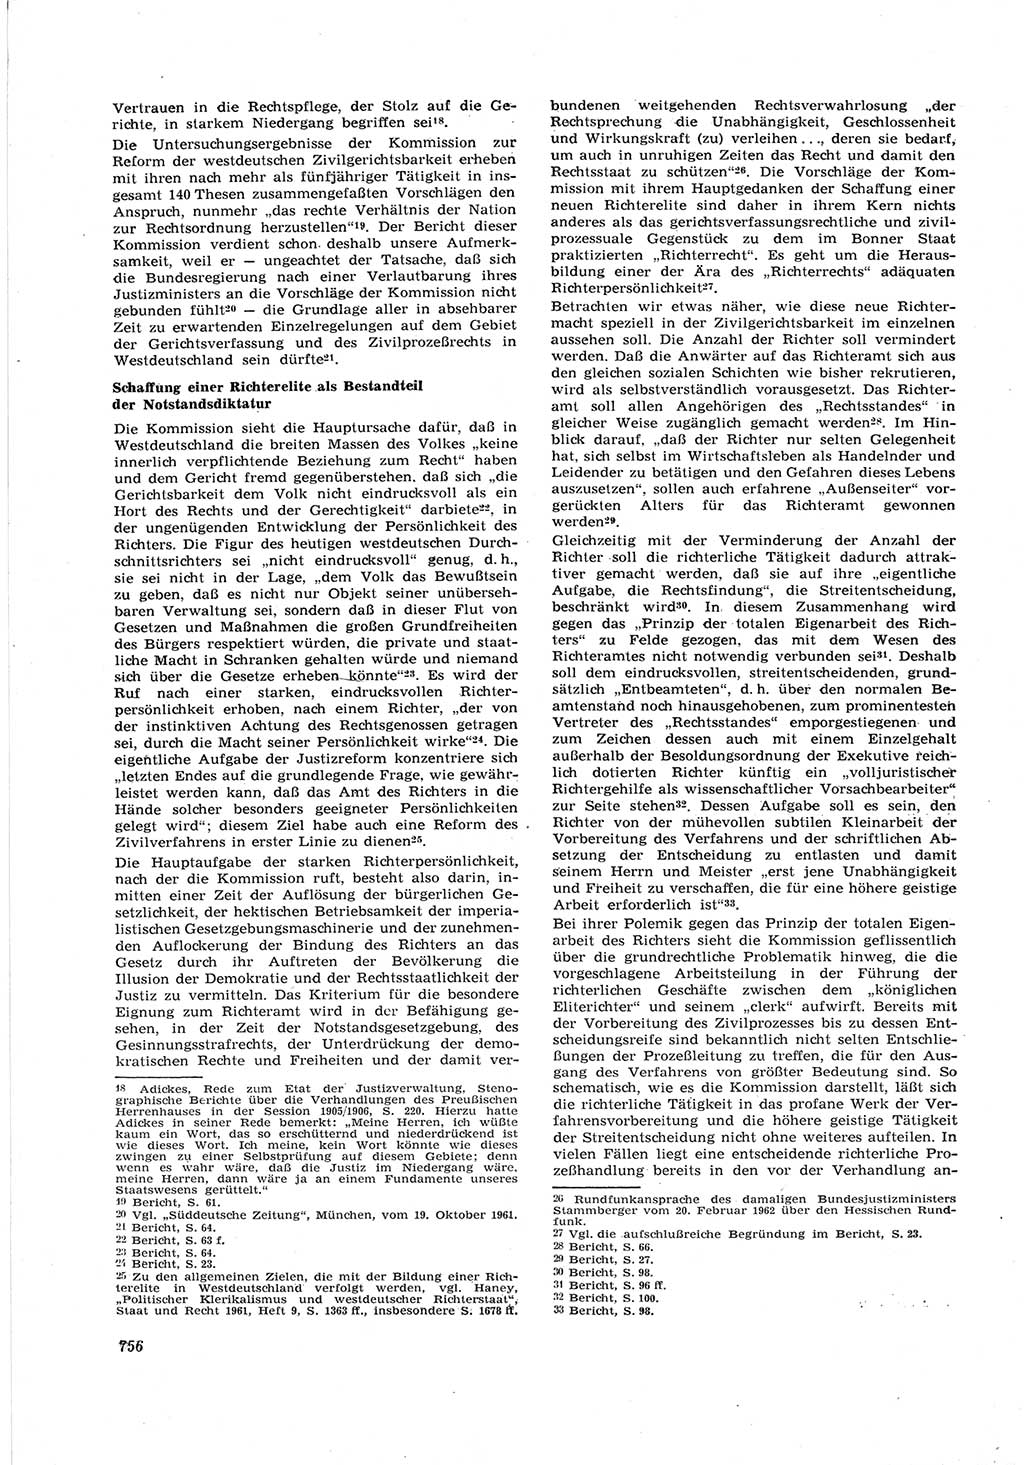 Neue Justiz (NJ), Zeitschrift für Recht und Rechtswissenschaft [Deutsche Demokratische Republik (DDR)], 17. Jahrgang 1963, Seite 756 (NJ DDR 1963, S. 756)